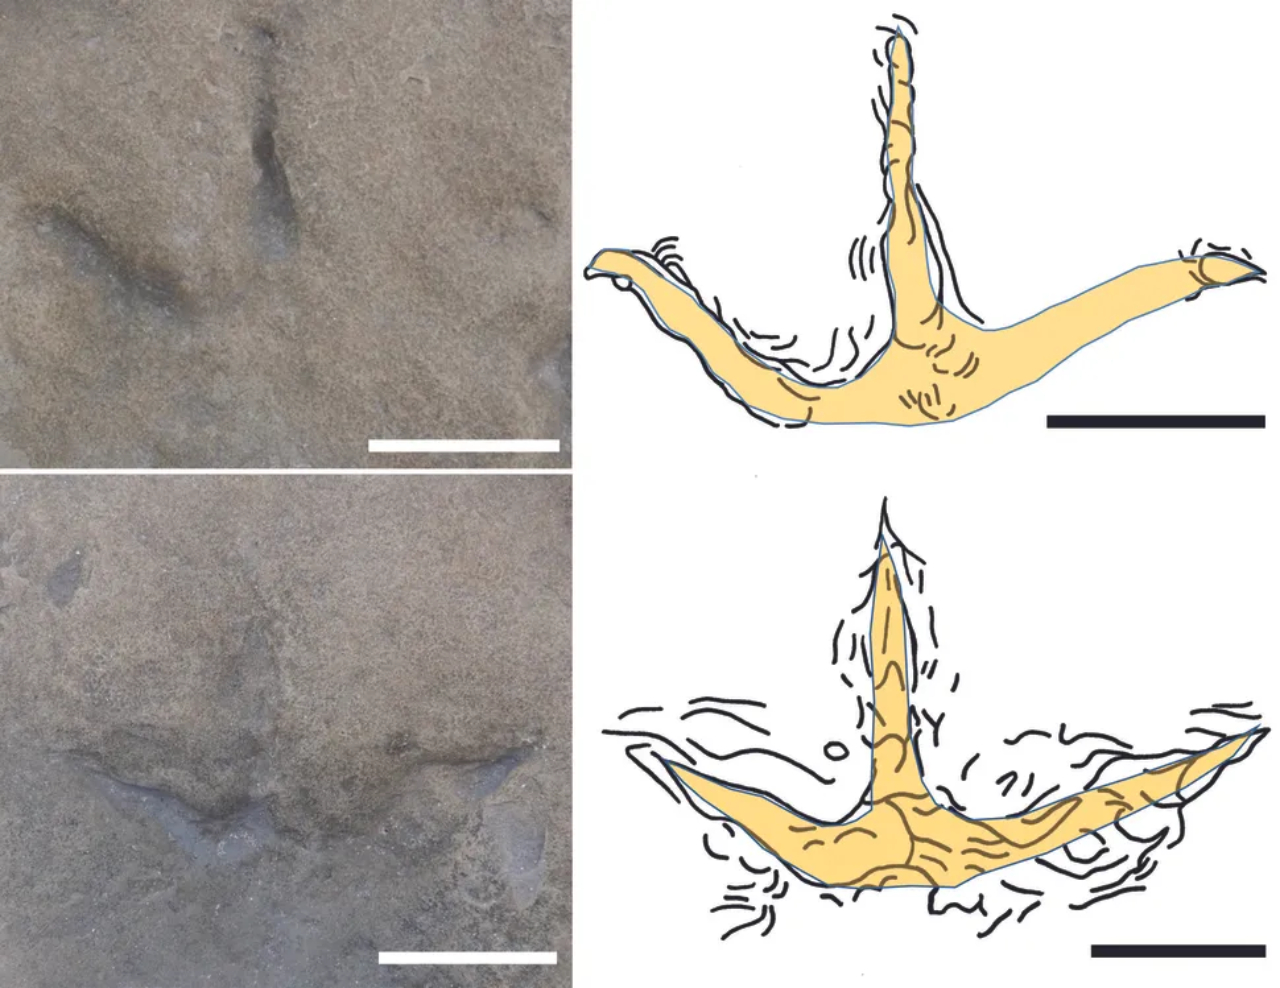 Pegadas de aves de 120 milhões de anos descobertas na Austrália